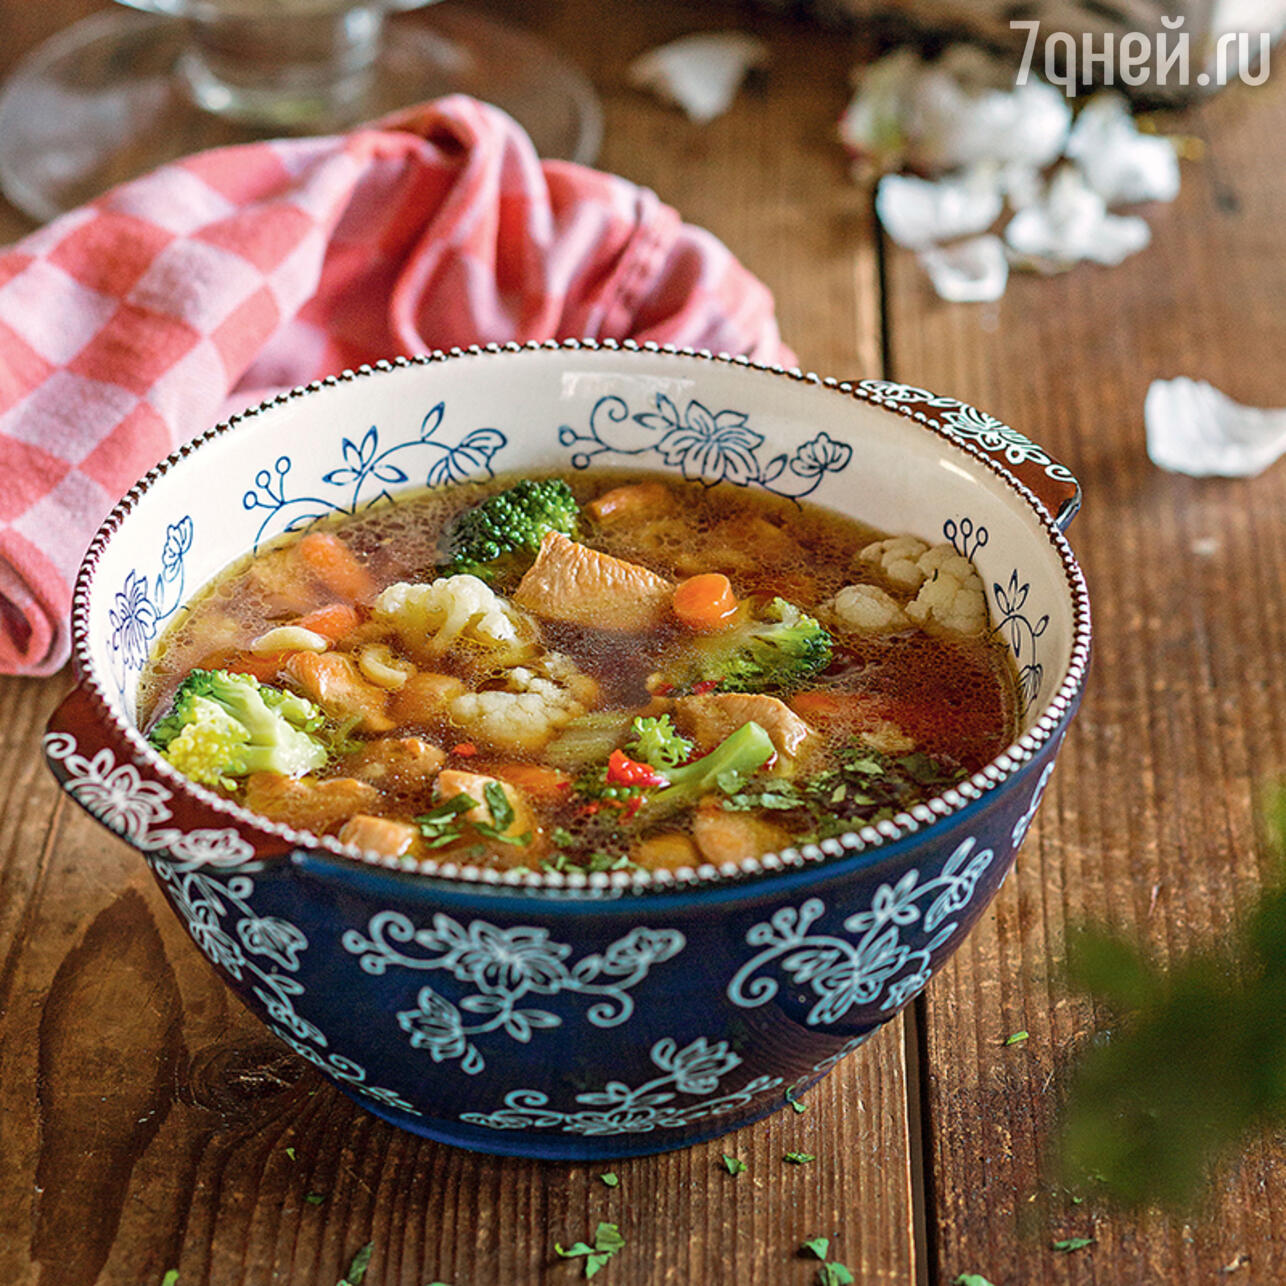 Суп из полбы — рецепт с фото | Рецепт | Национальная еда, Здоровое питание, Еда